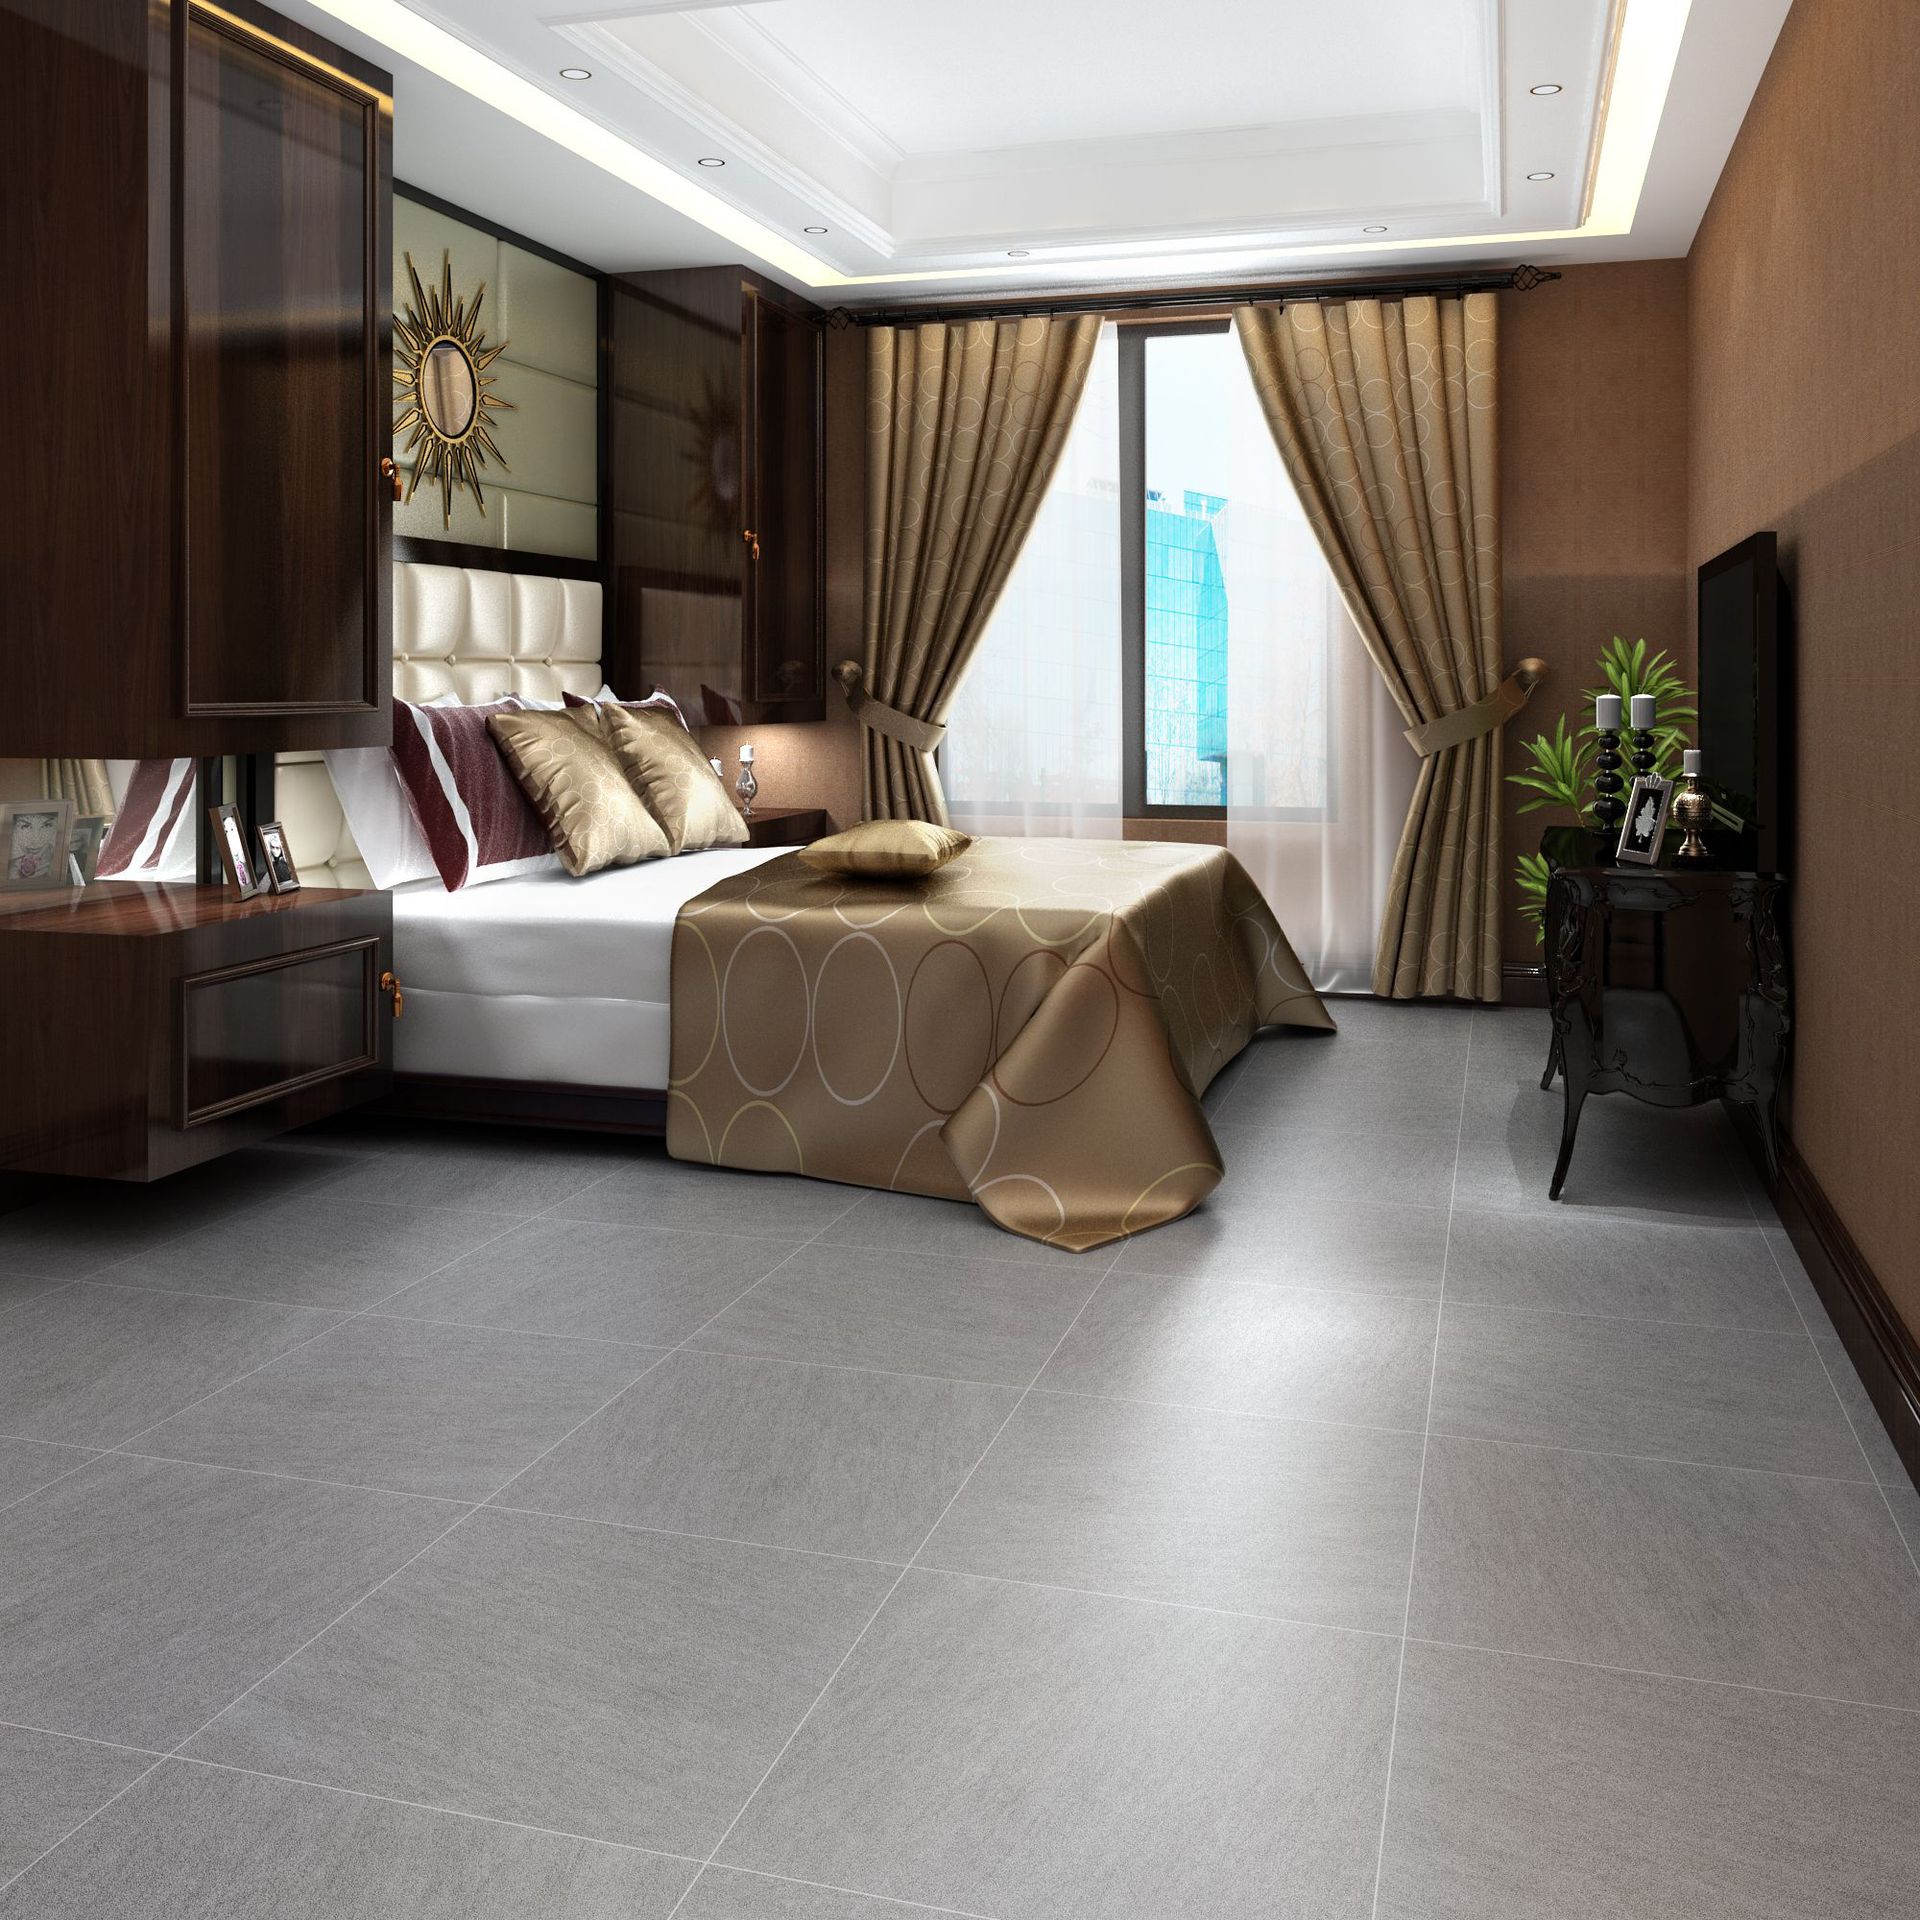 卧室客厅瓷砖 布纹仿古砖水泥灰地砖600*600 防滑地板砖600600